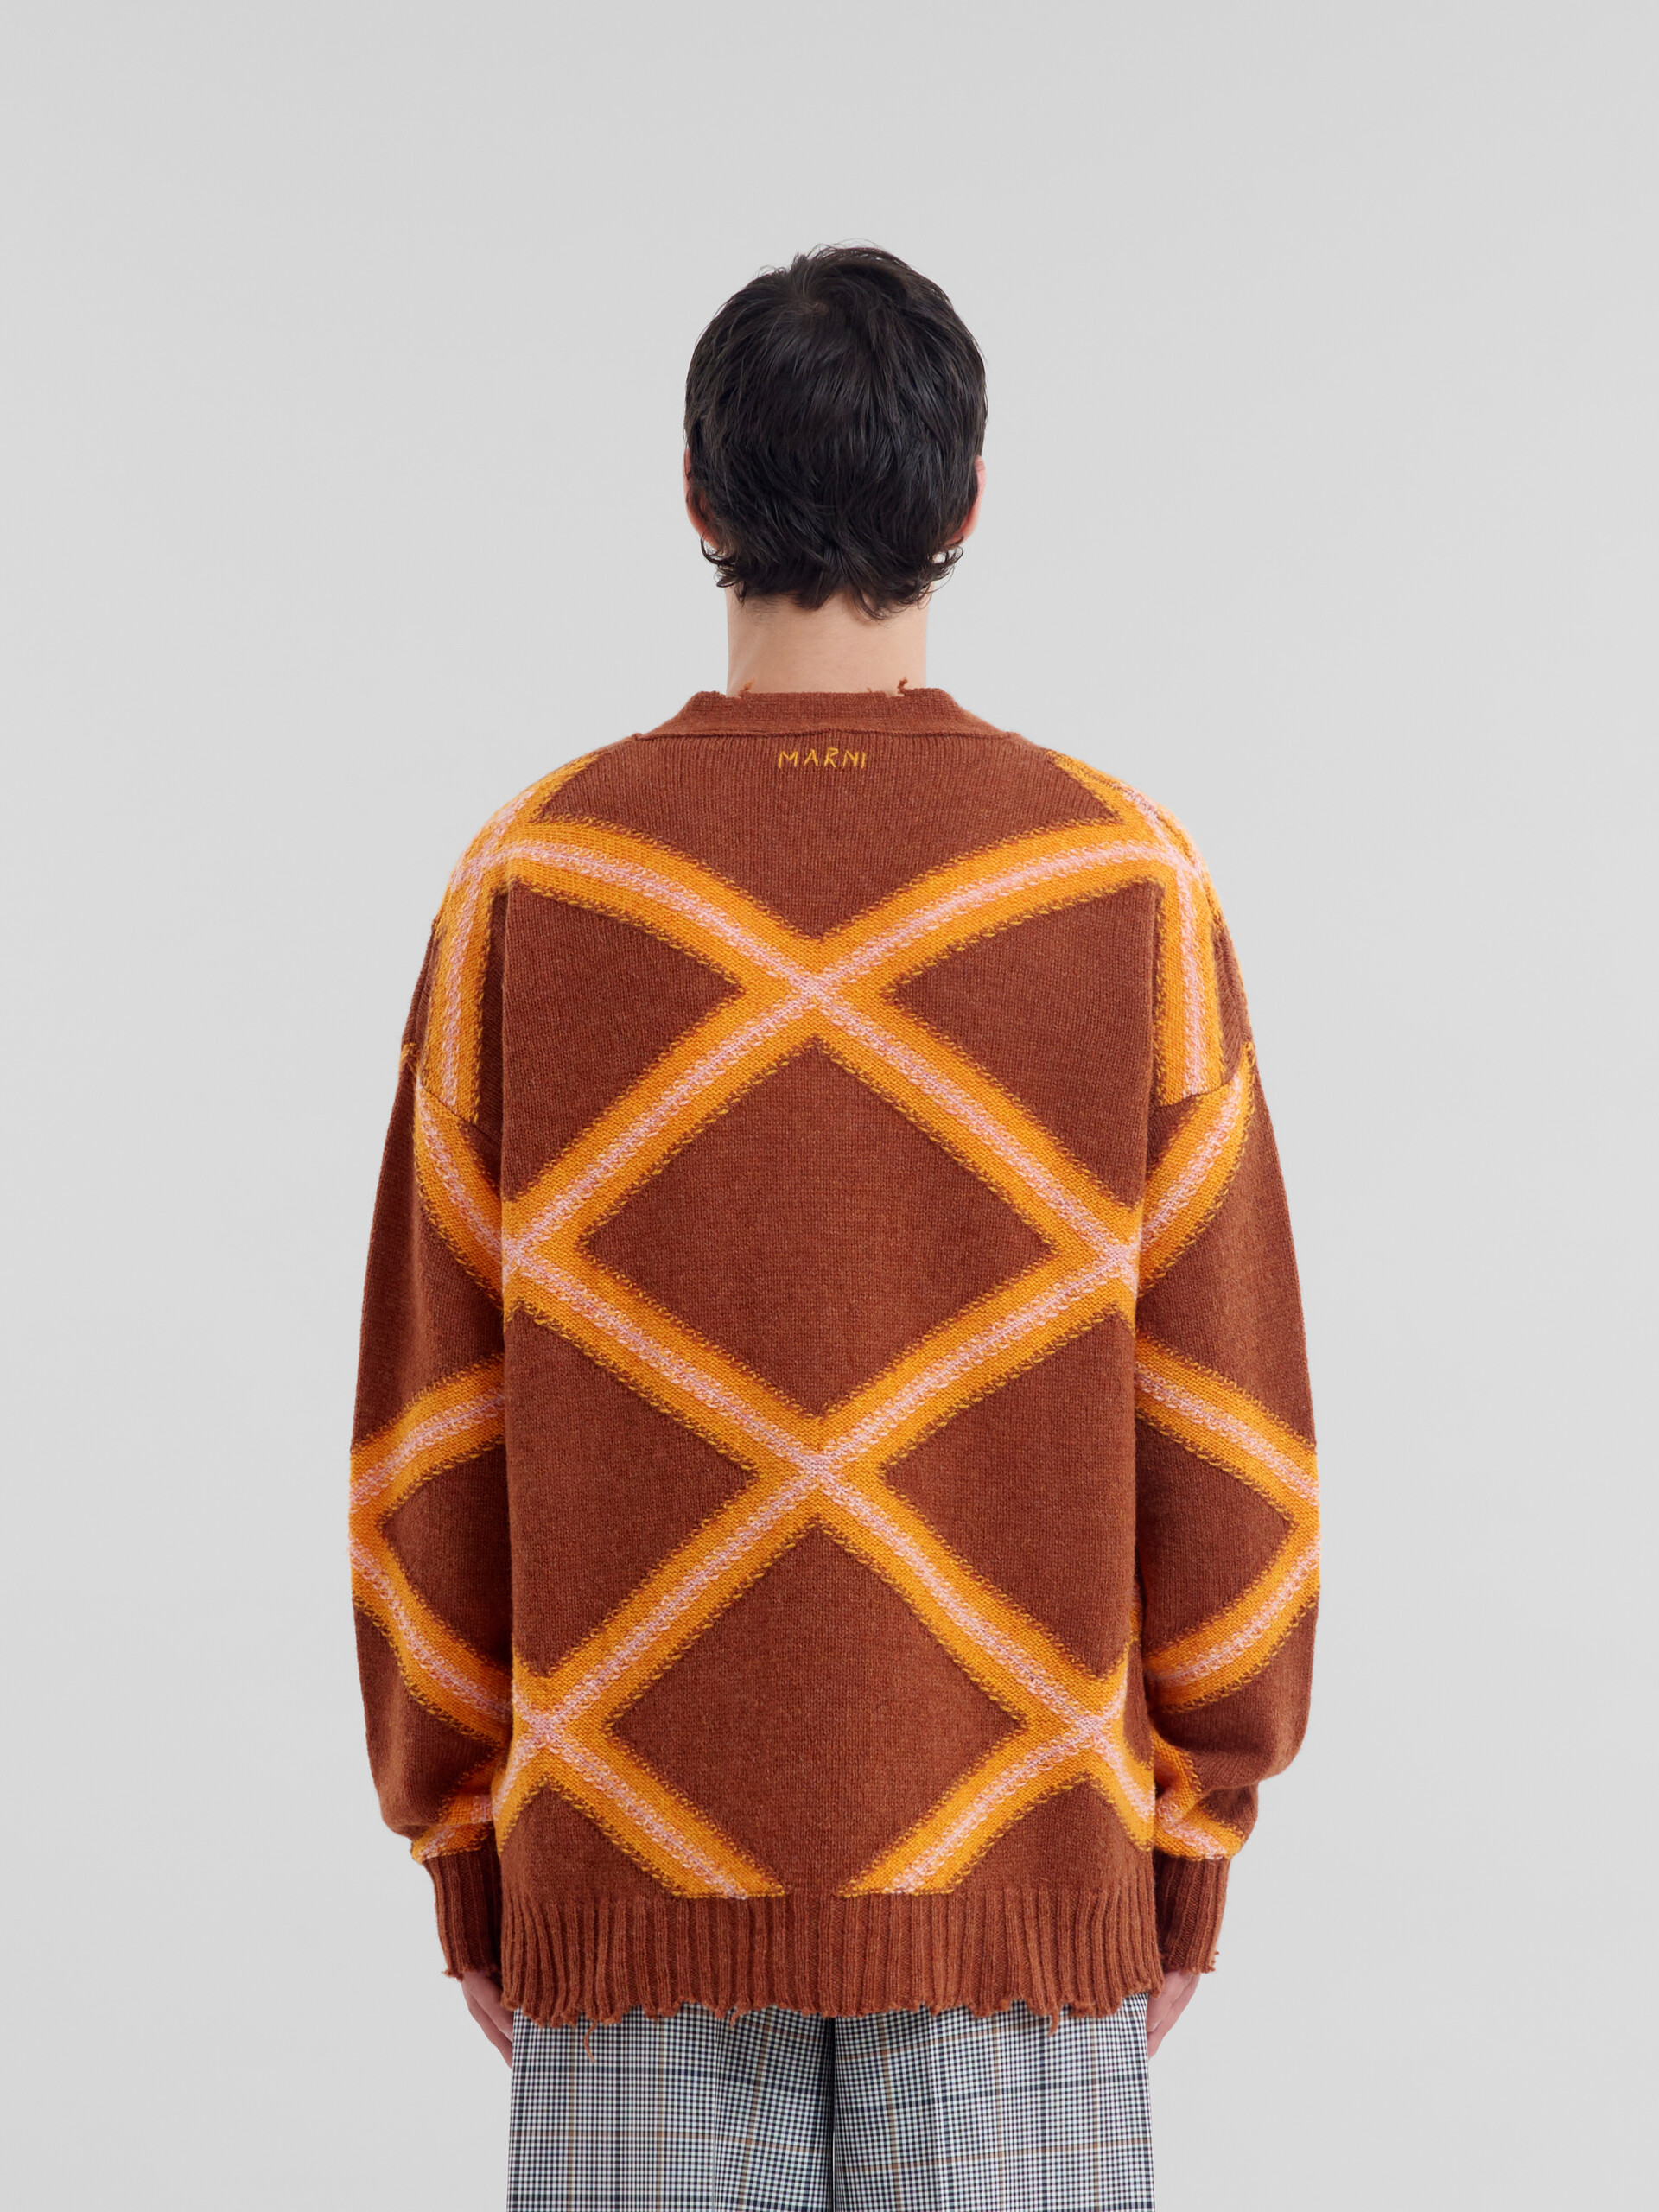 Cárdigan marrón de lana quebrada con motivo de rombos - jerseys - Image 3